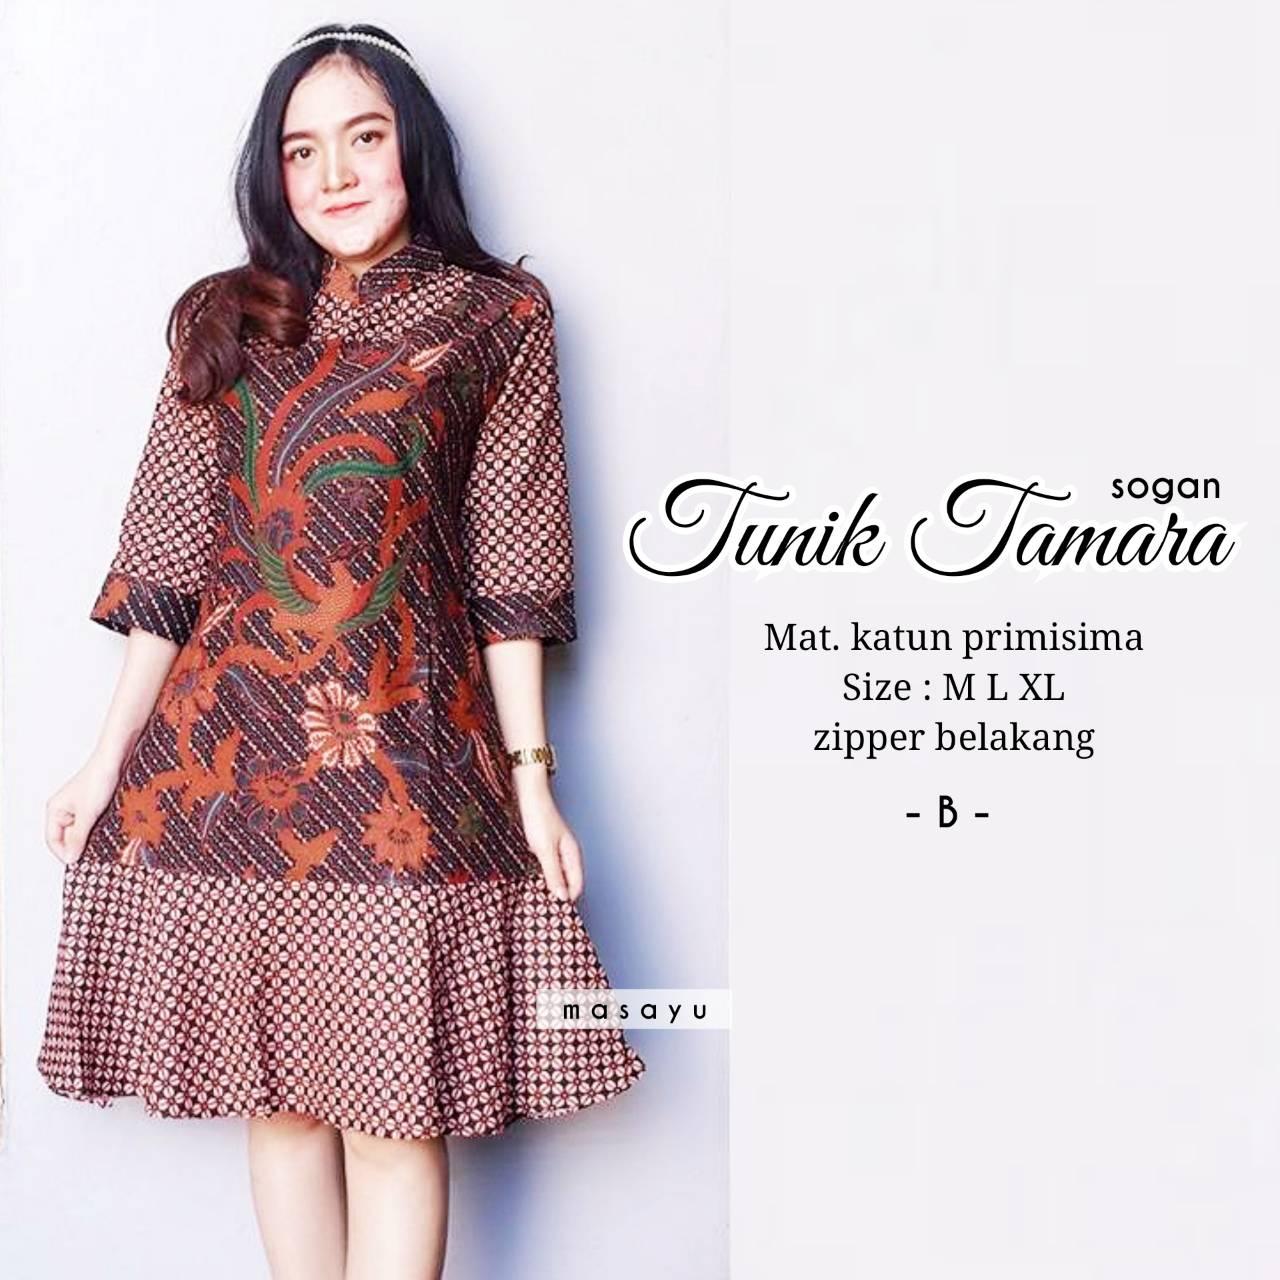 Get Inspired For Model  Baju  Batik Atasan Tunik  Busana Trends